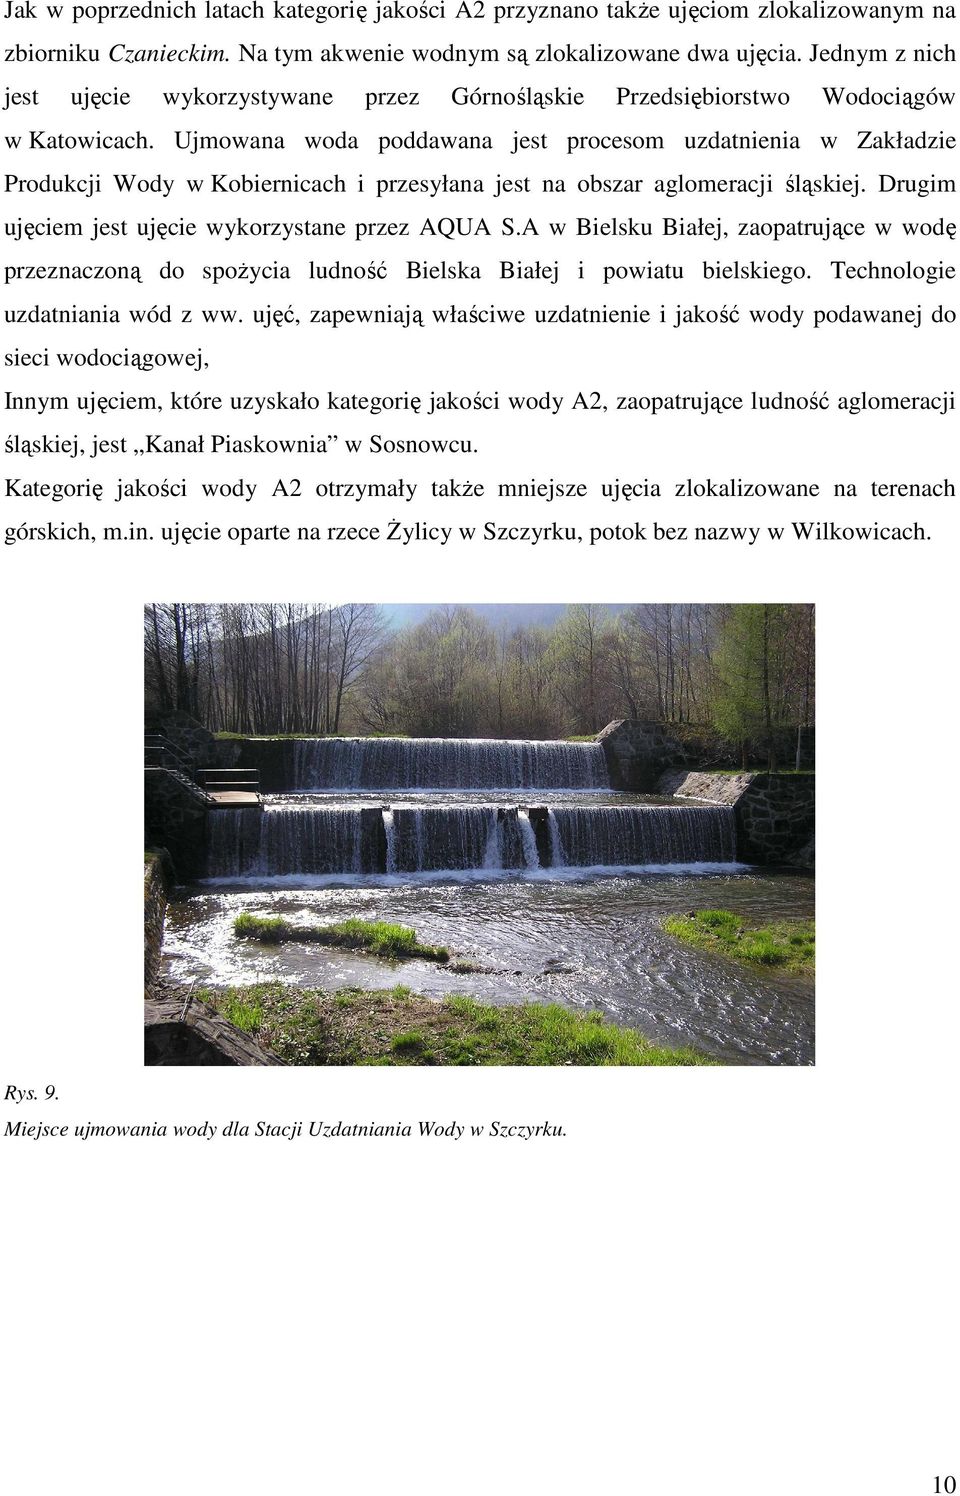 Ujmowana woda poddawana jest procesom uzdatnienia w Zakładzie Produkcji Wody w Kobiernicach i przesyłana jest na obszar aglomeracji śląskiej. Drugim ujęciem jest ujęcie wykorzystane przez AQUA S.